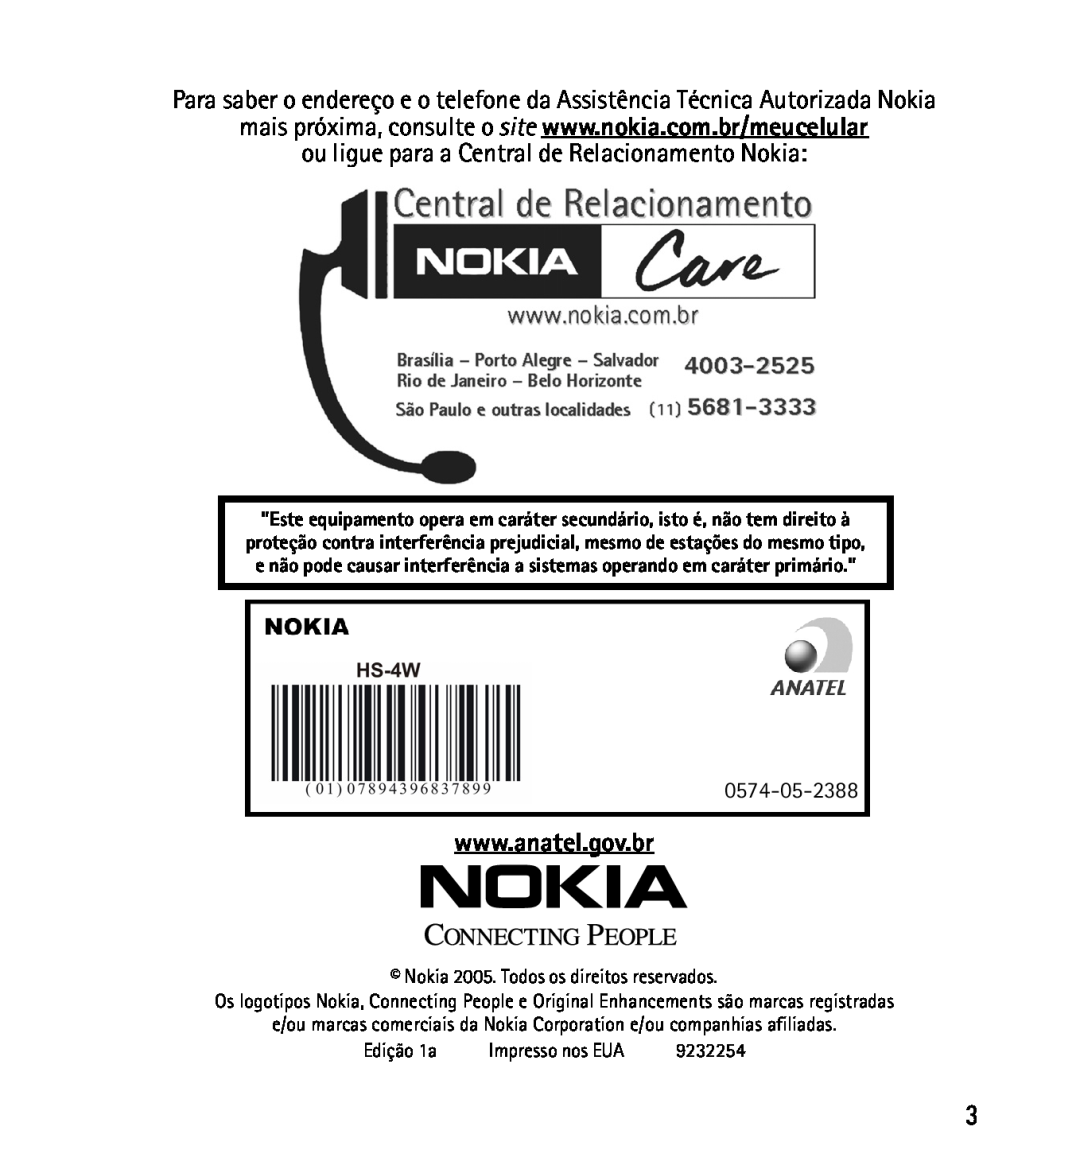 Nokia 9232254 manual ou ligue para a Central de Relacionamento Nokia 